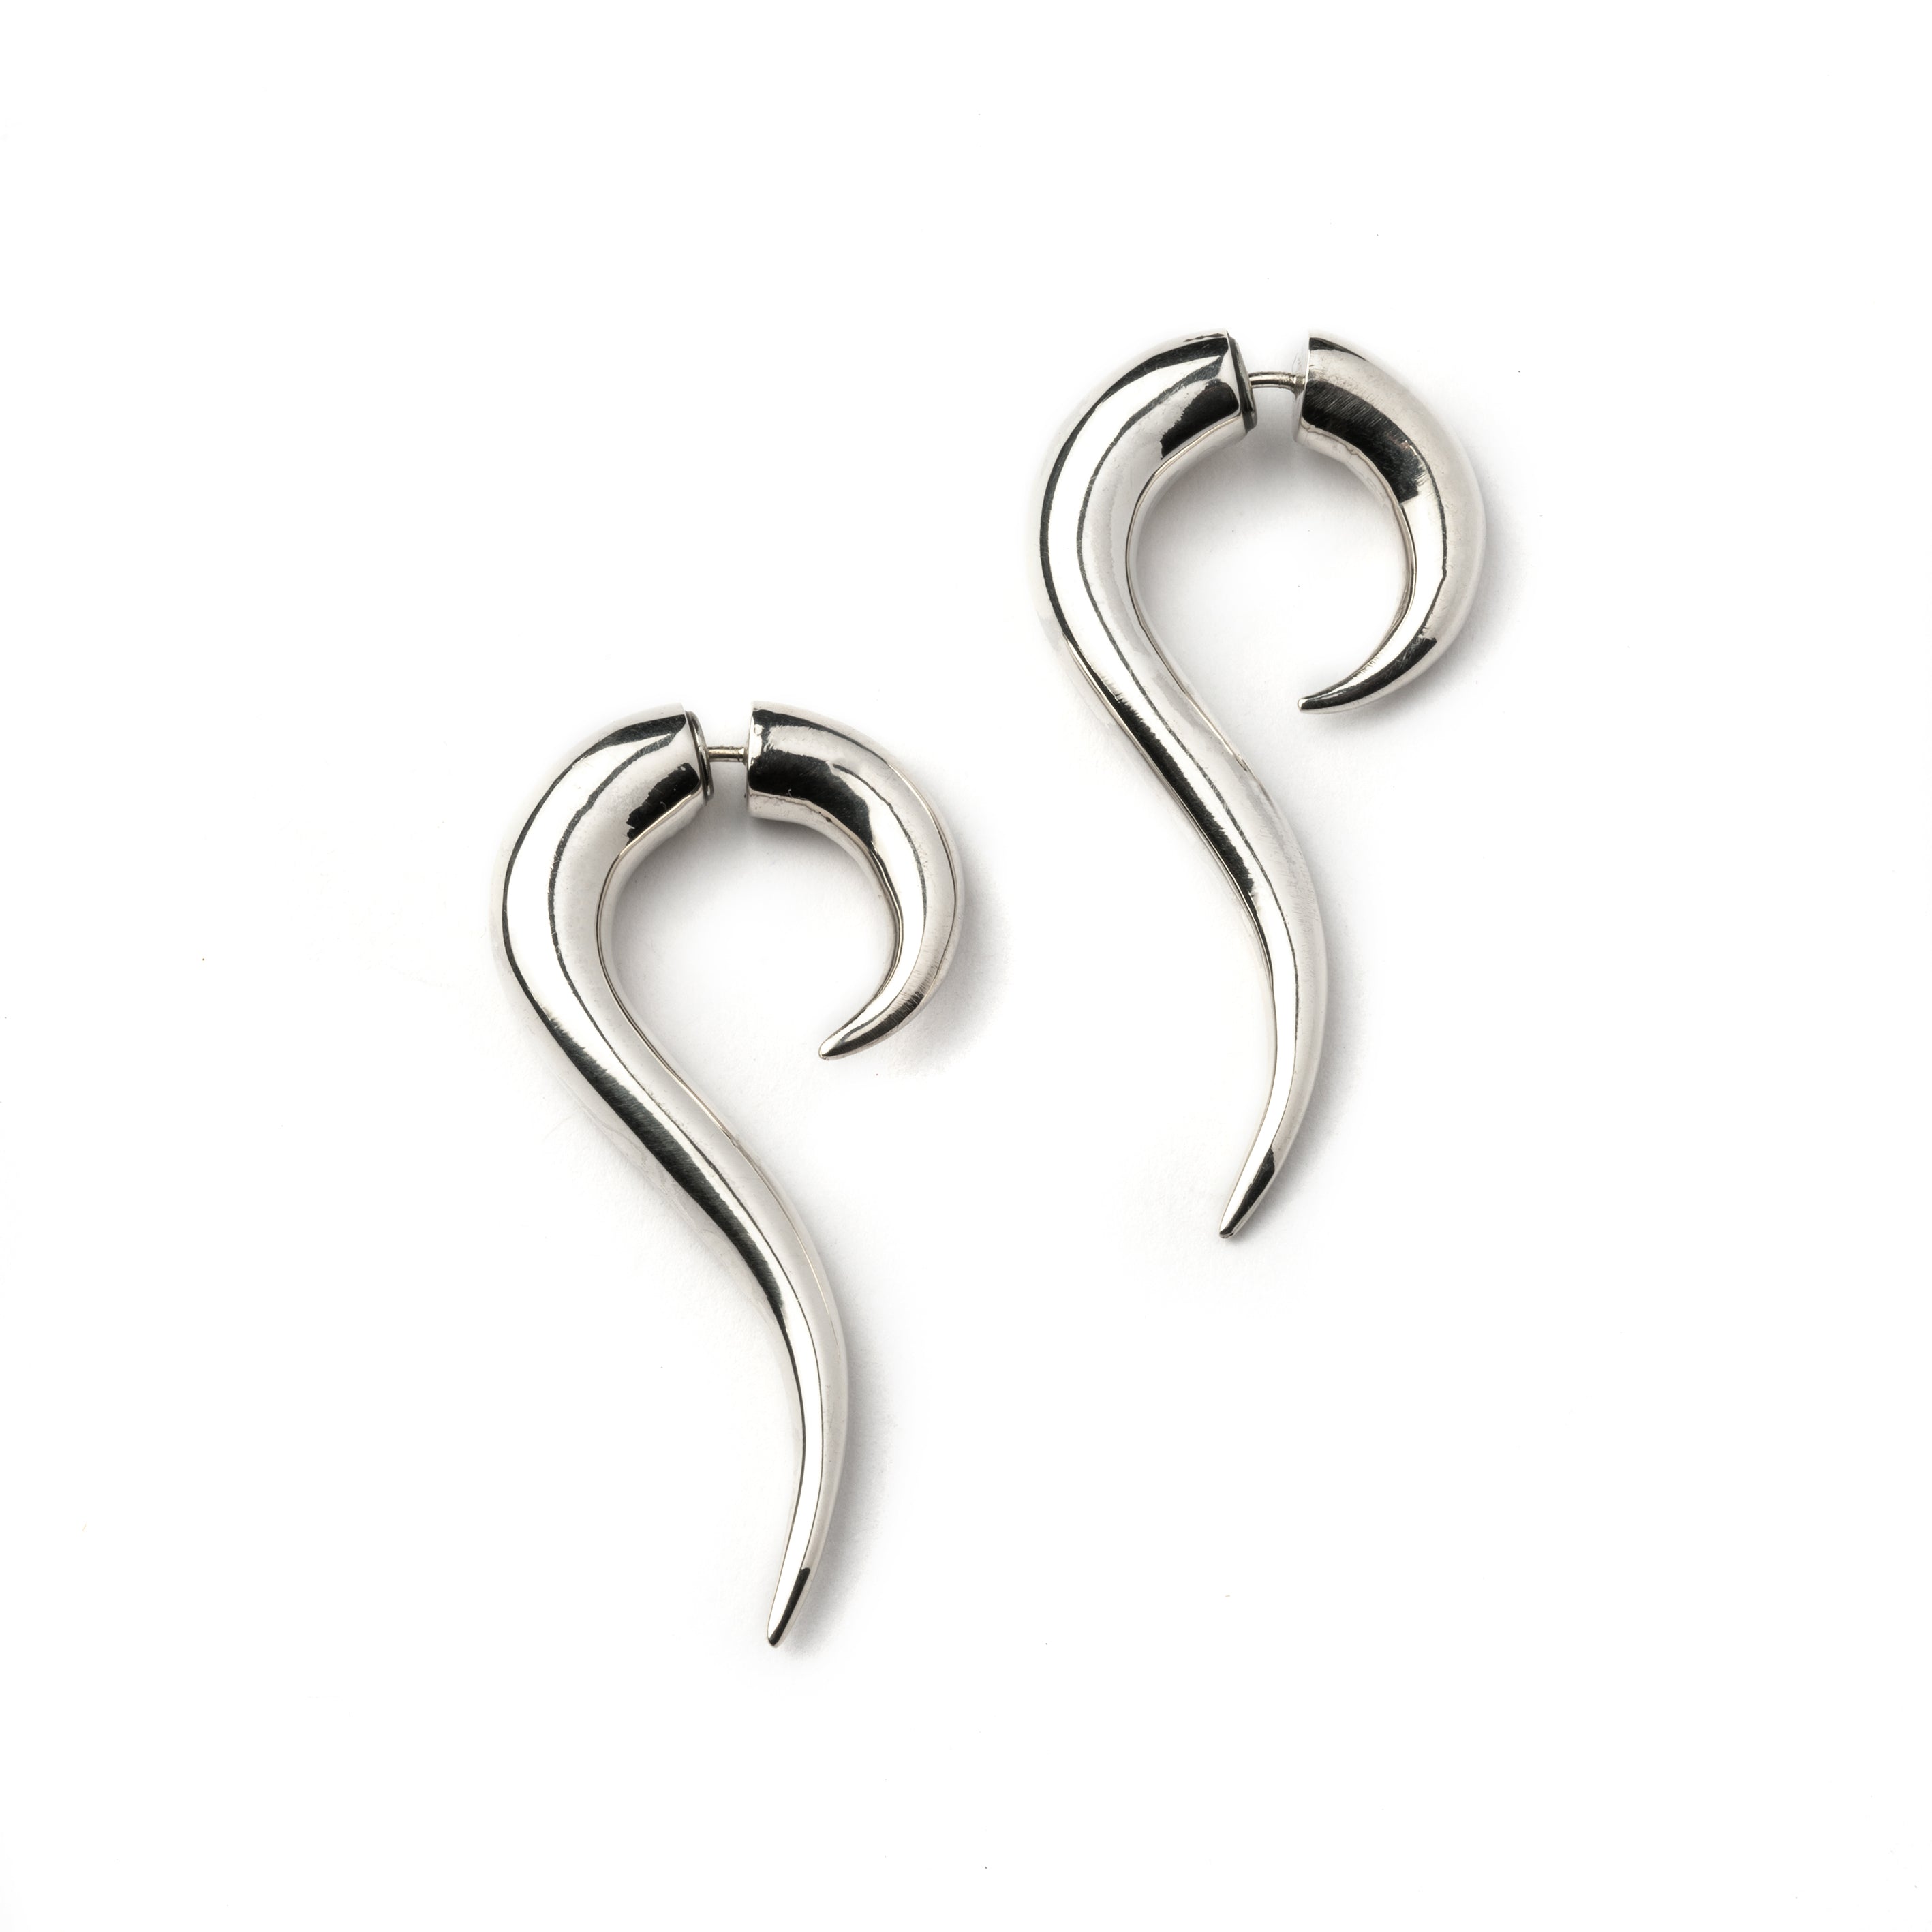 pair of Maui Silver Fake Gauge Earrings side view